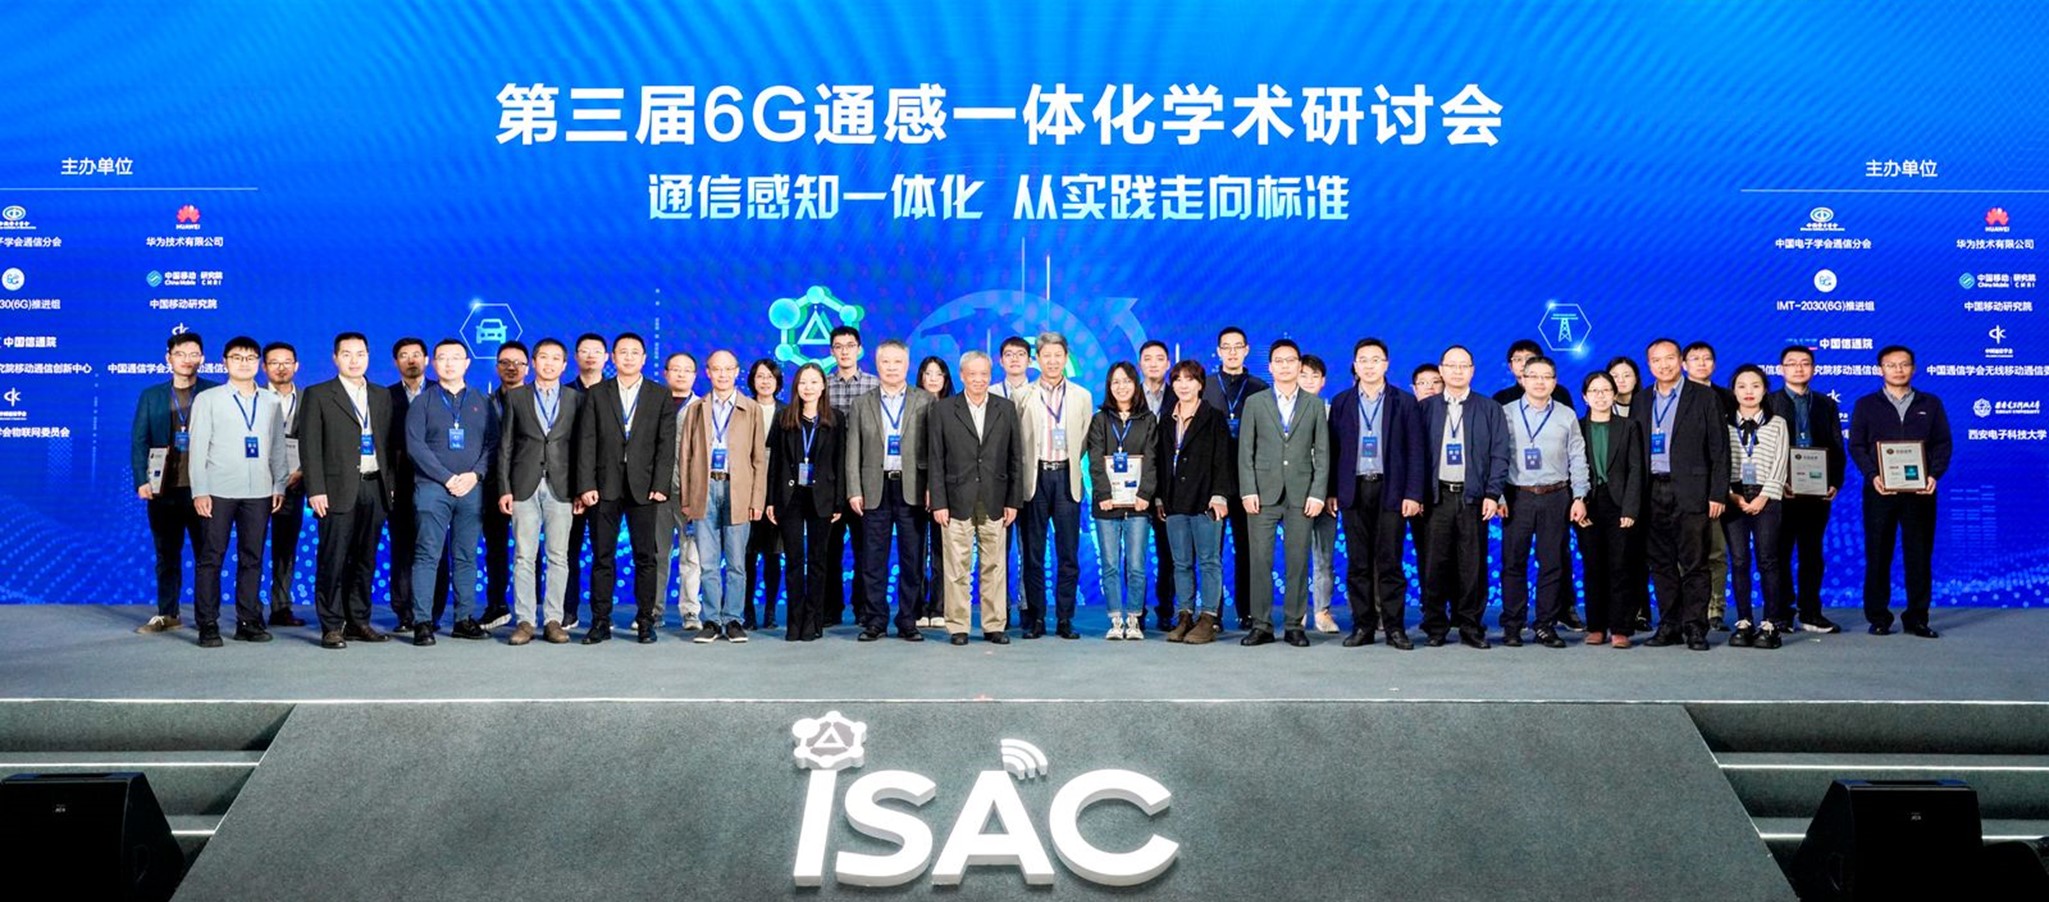 第三届6G通信感知一体化学术研讨会在西安成功举办